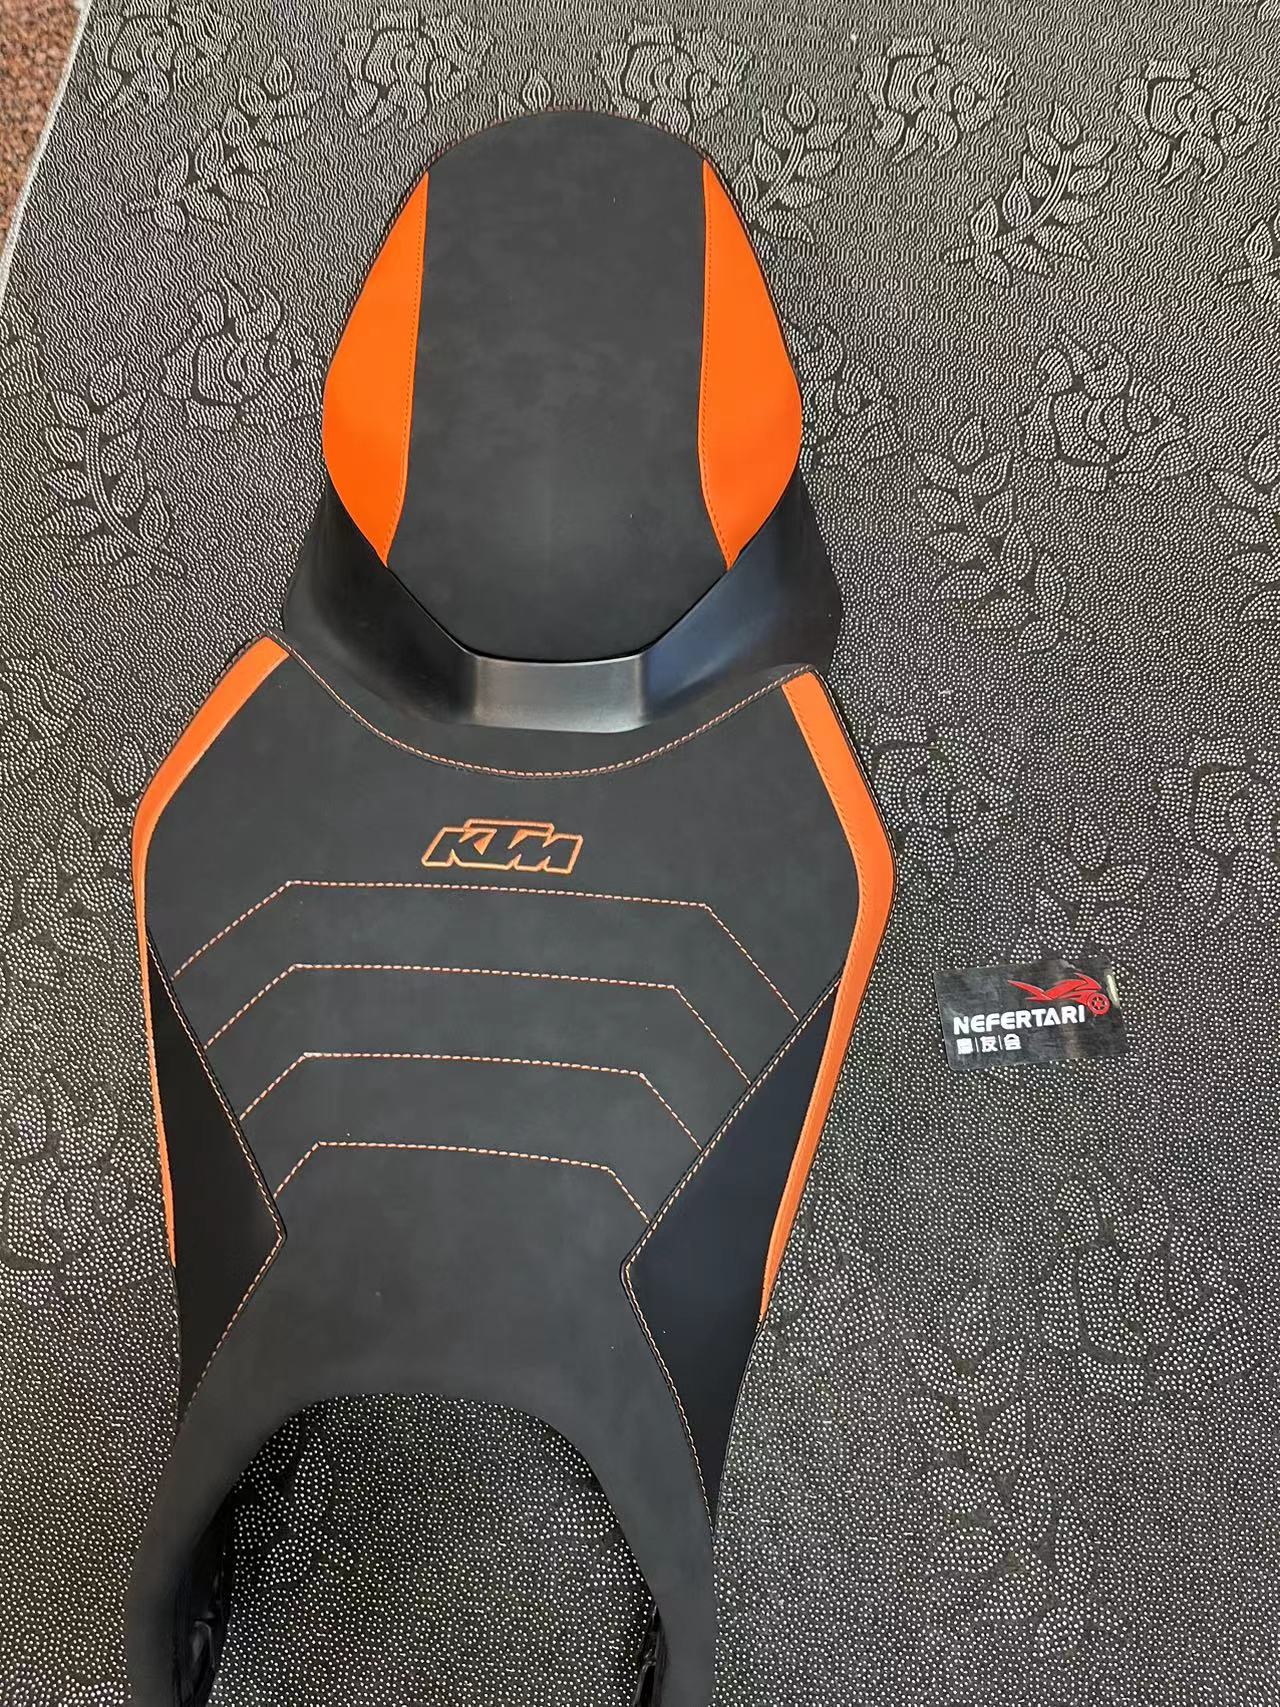 摩托车KTM790Duke坐垫个性定制可改舒适度加软可定做刺绣颜色选择